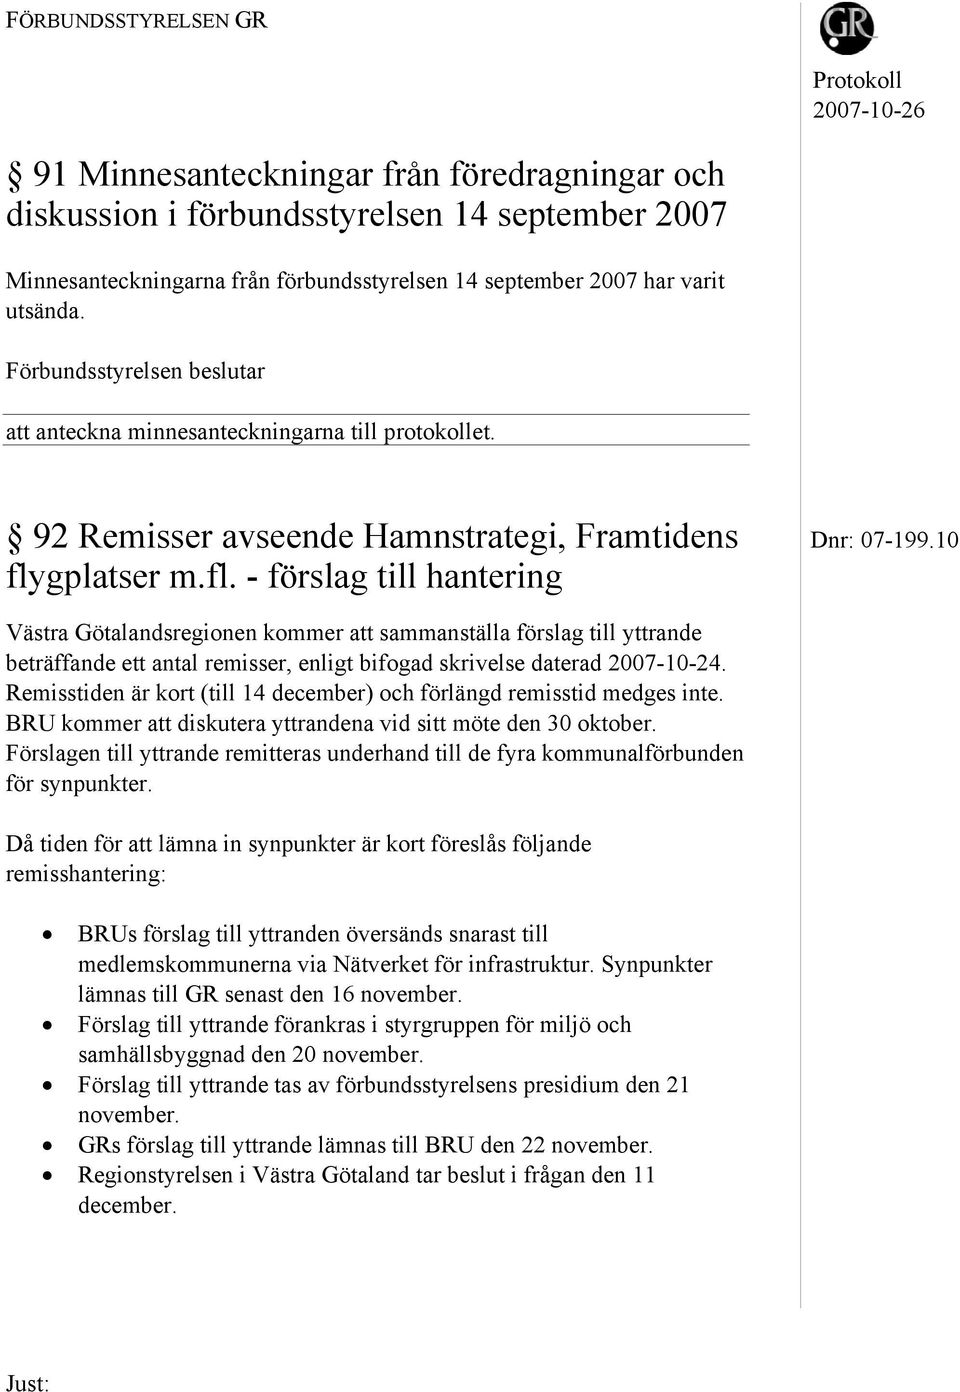 gplatser m.fl. - förslag till hantering Västra Götalandsregionen kommer att sammanställa förslag till yttrande beträffande ett antal remisser, enligt bifogad skrivelse daterad 2007-10-24.